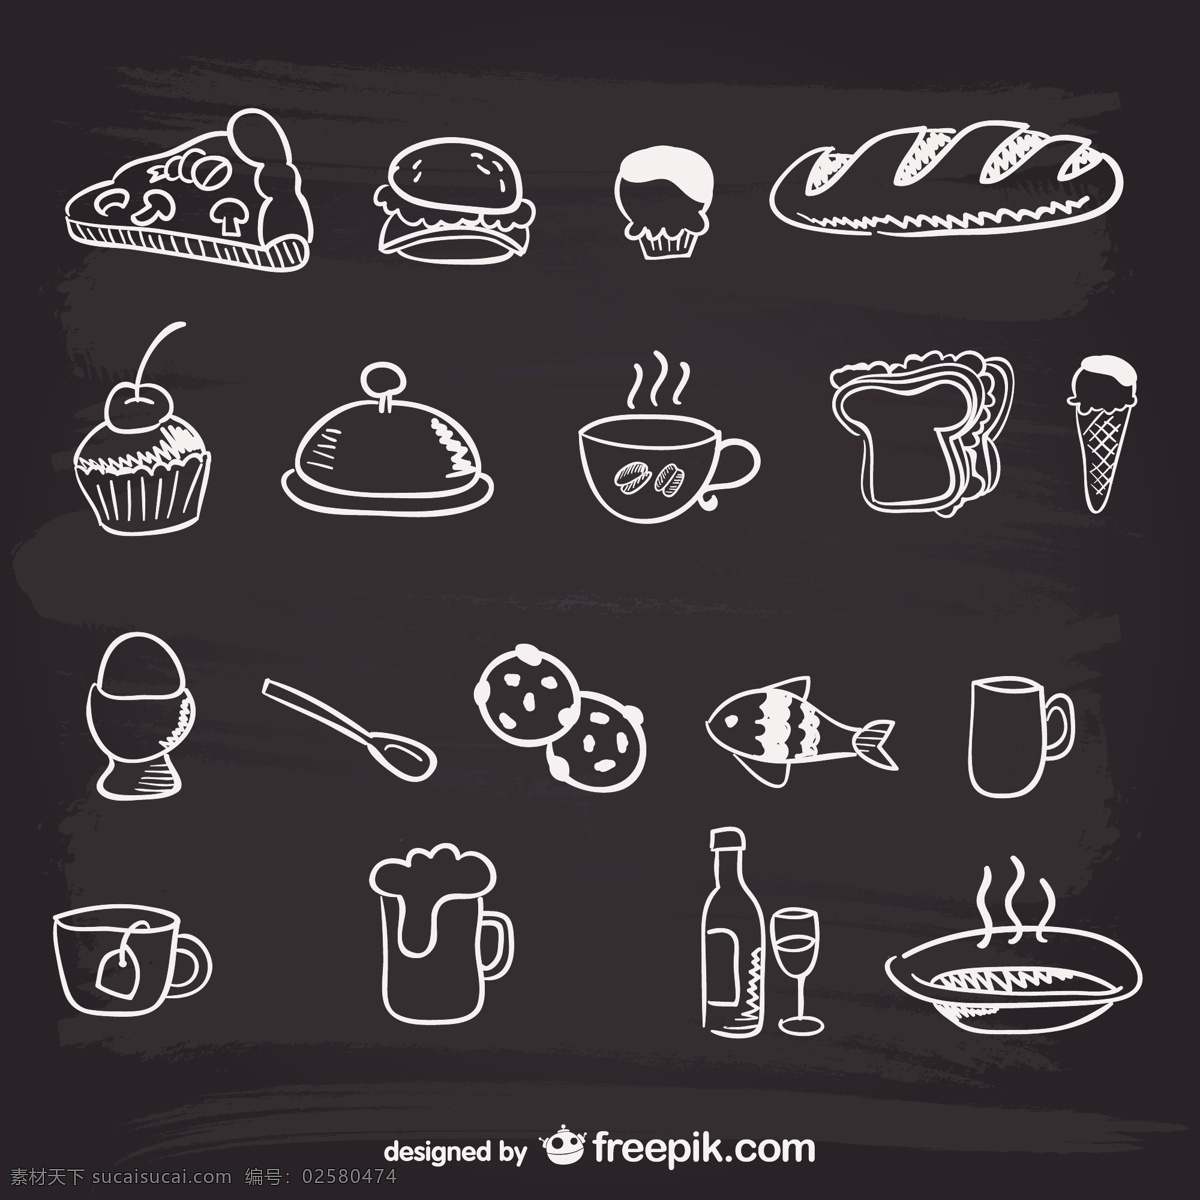 手绘 菜单 食品 图形 菜单设计 啤酒 披萨 蛋糕 鱼 酒 黑板 茶 面包板 涂鸦 瓶 粉笔 玻璃 黑色